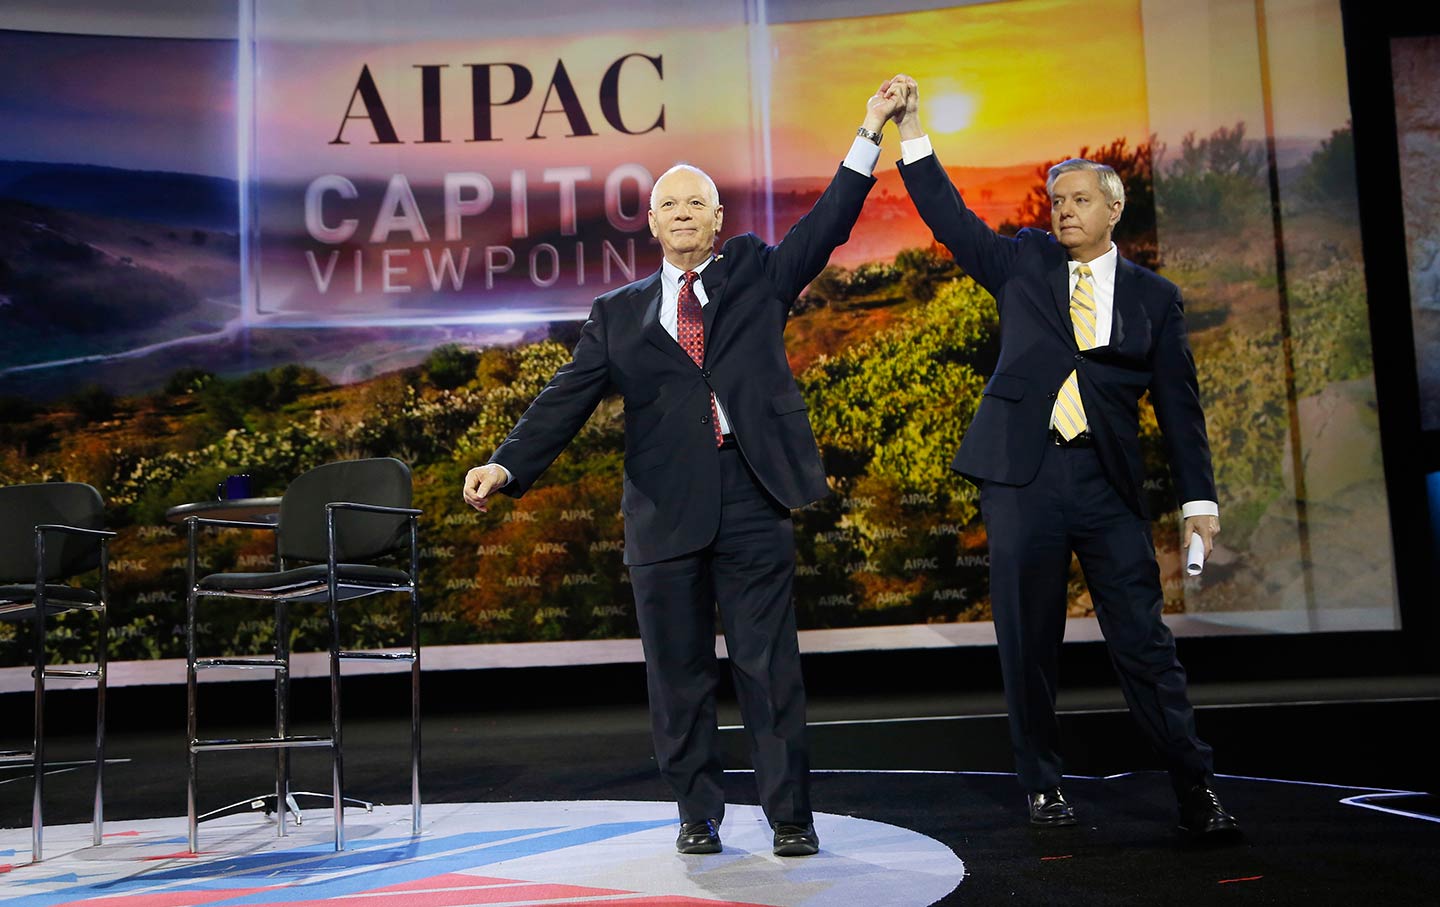 Senators at AIPAC